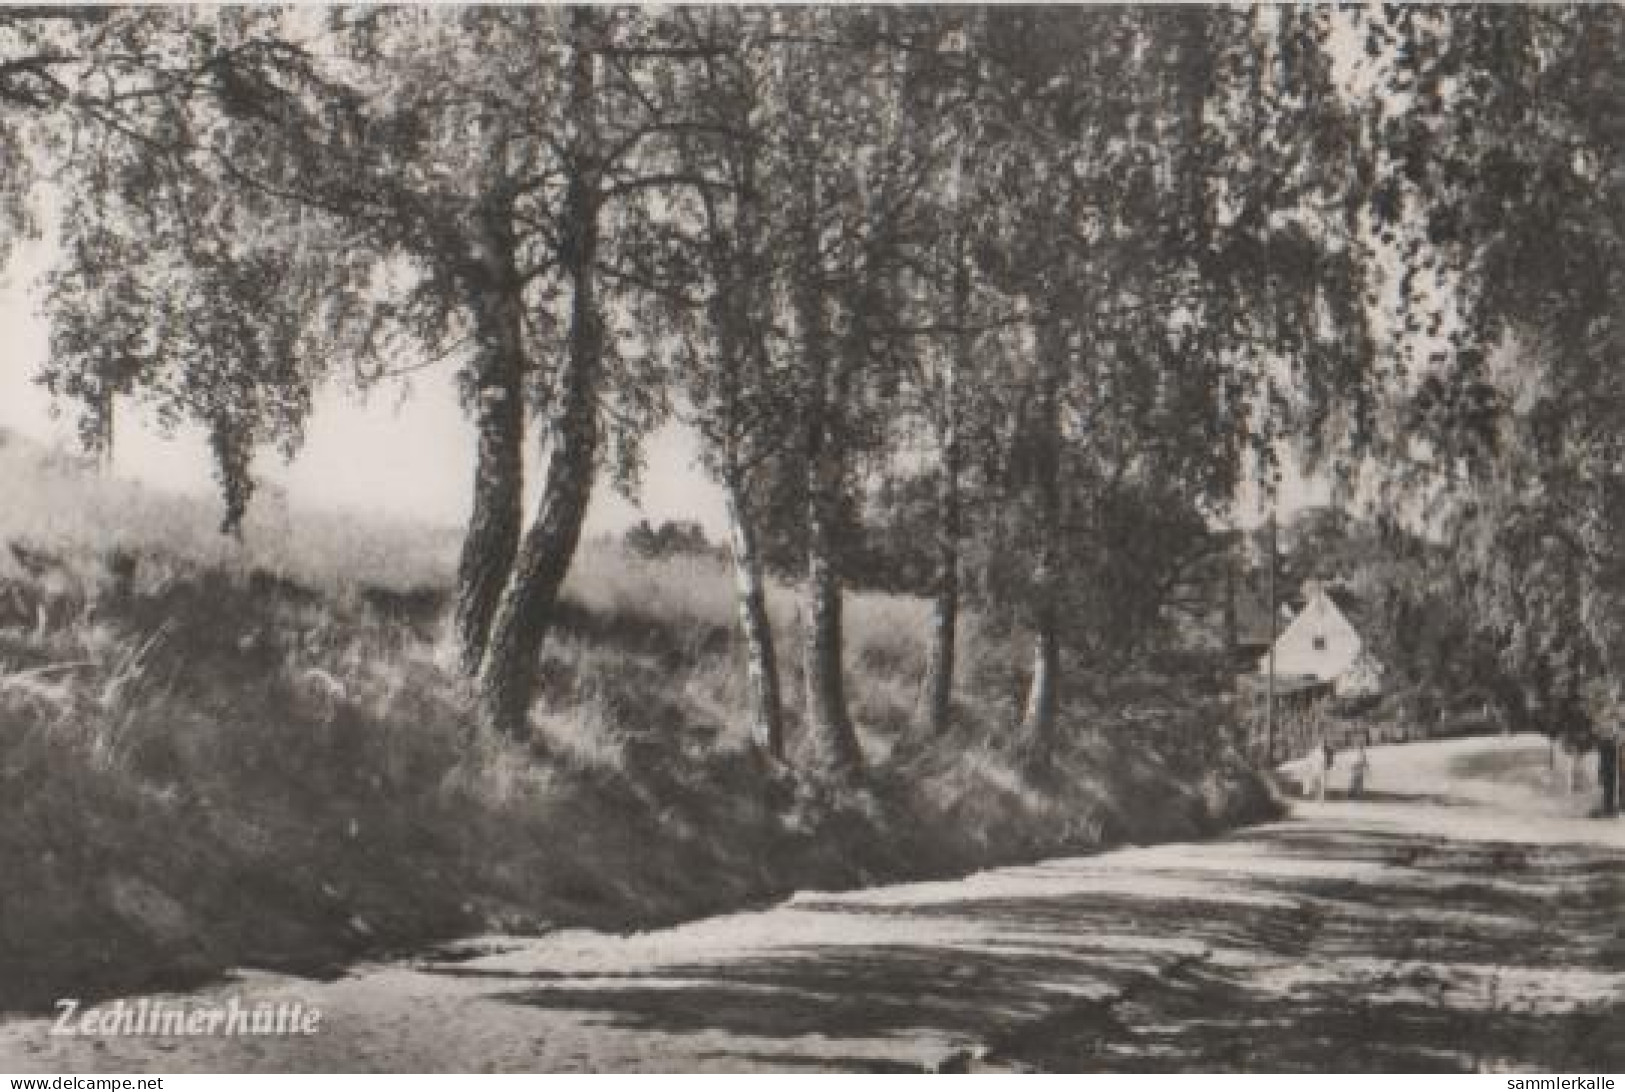 11916 - Zechlinerhütte - Ca. 1965 - Rheinsberg